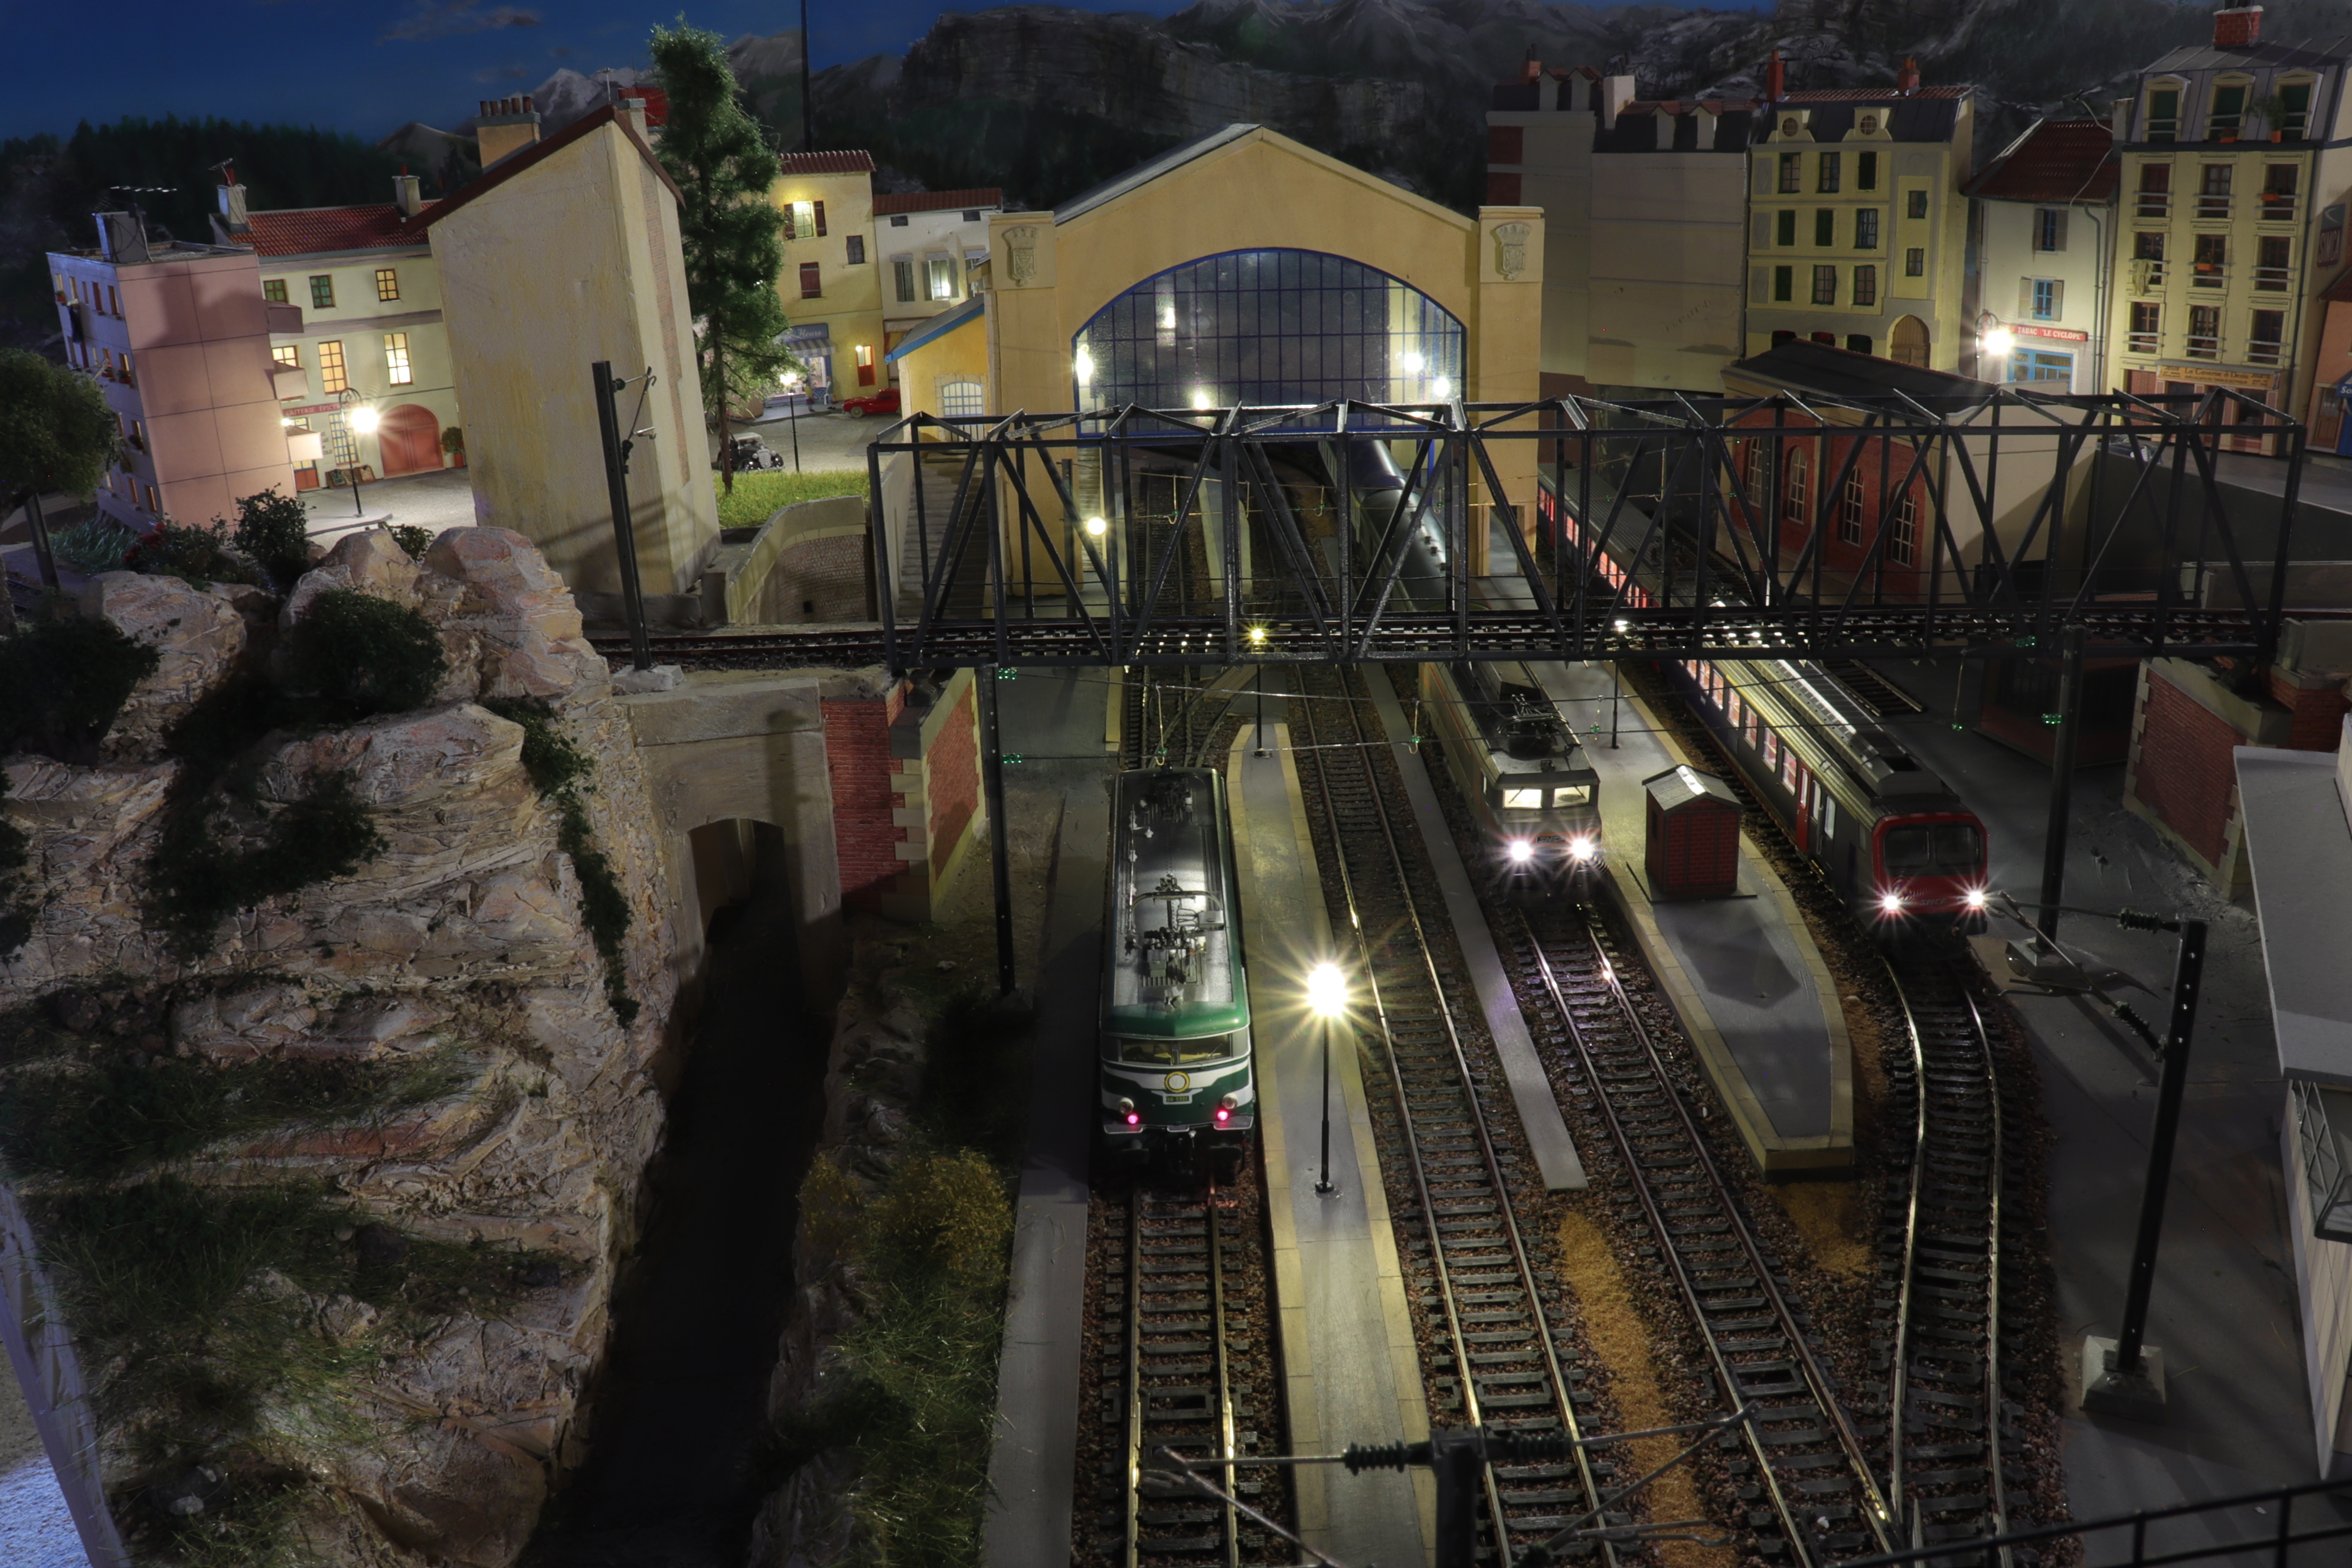 Clés pour le train miniature: Le modélisme ferroviaire, c'est facile ?